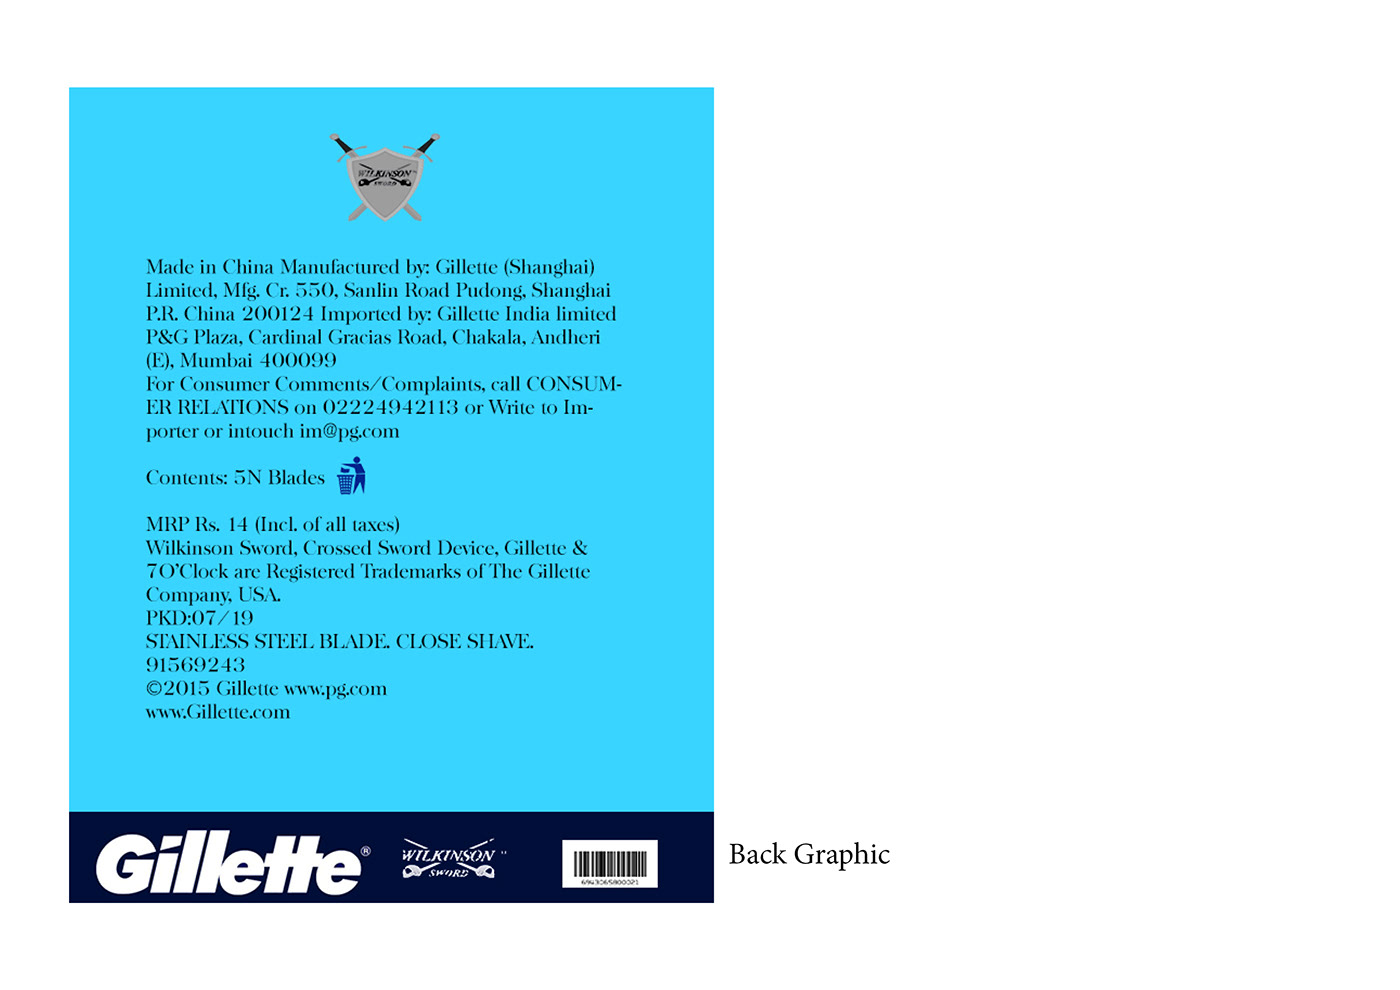 cinthol GILLETTE graphic lotion Packaging redesign shaving blade soap Vaseline